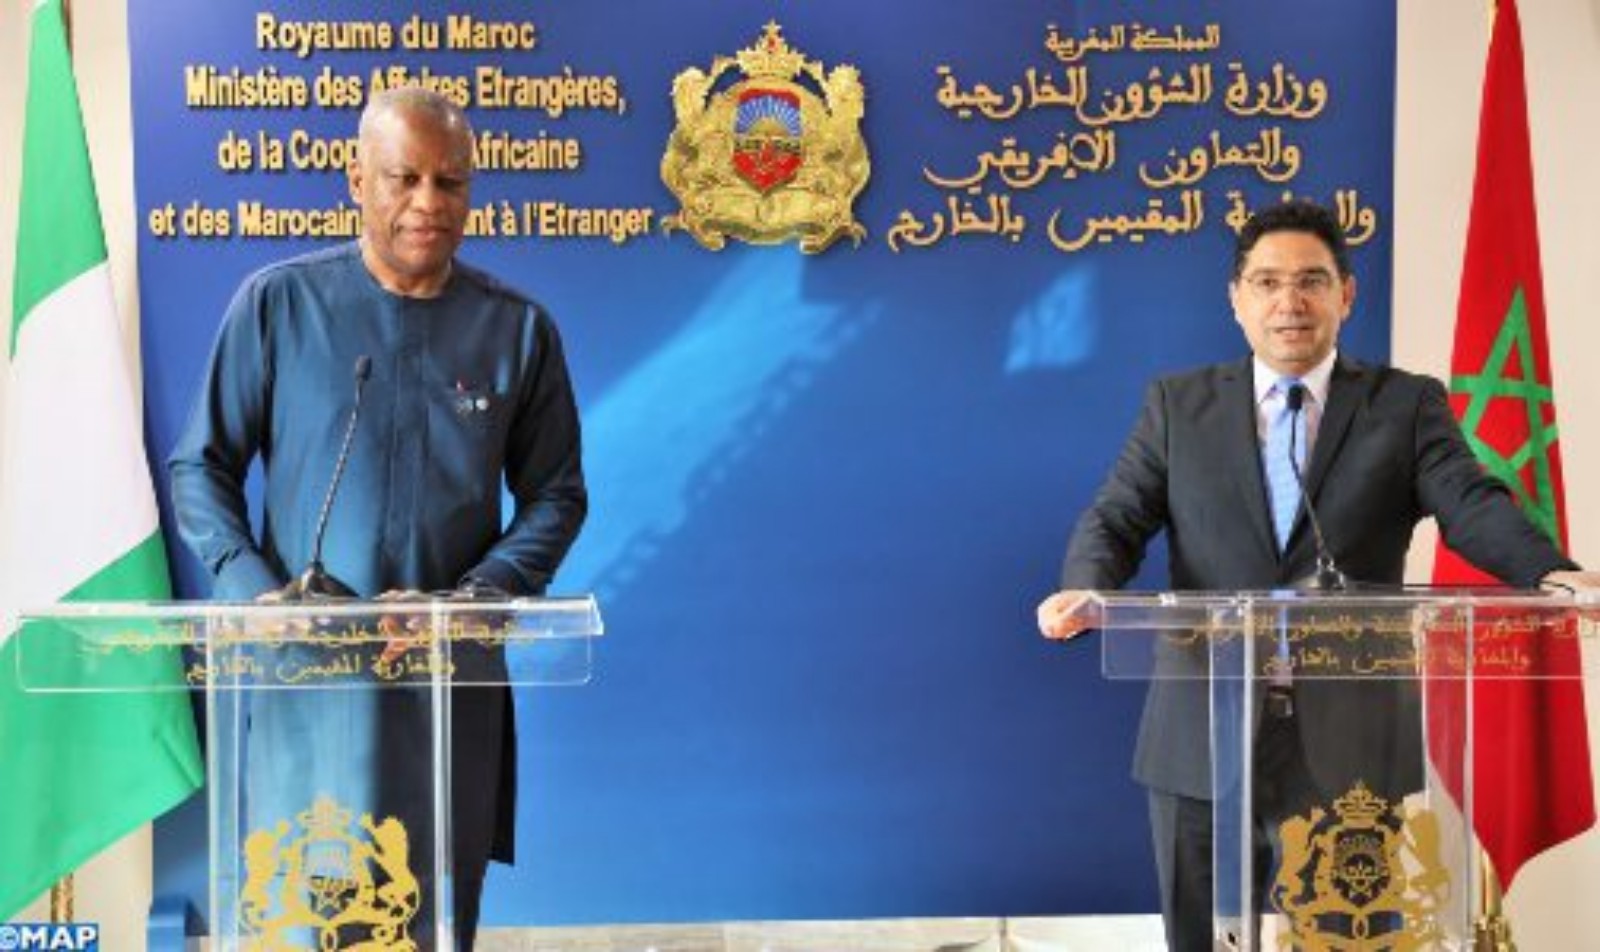 وزير شؤون خارجية نيجيريا يصف التعاون الاقتصادي بين بلاده والمغرب بـ “الثوري”